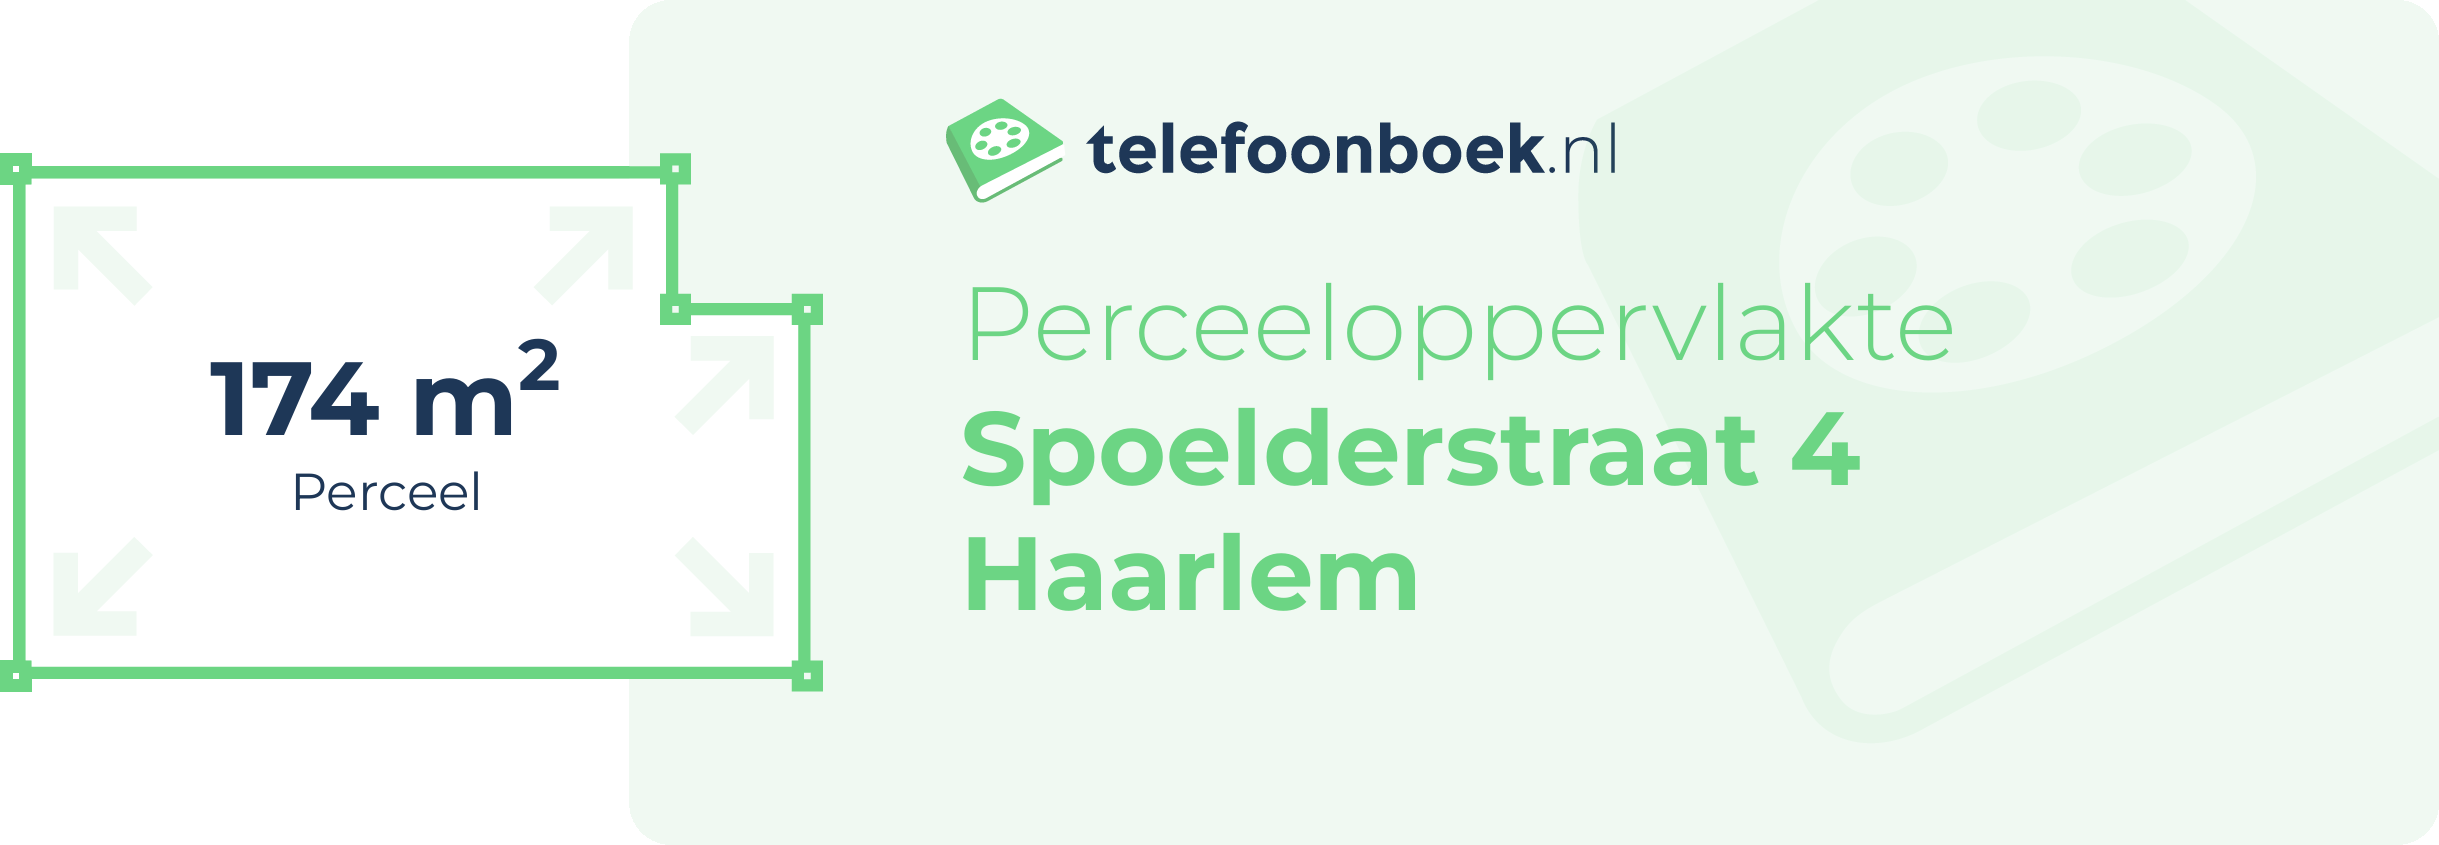 Perceeloppervlakte Spoelderstraat 4 Haarlem